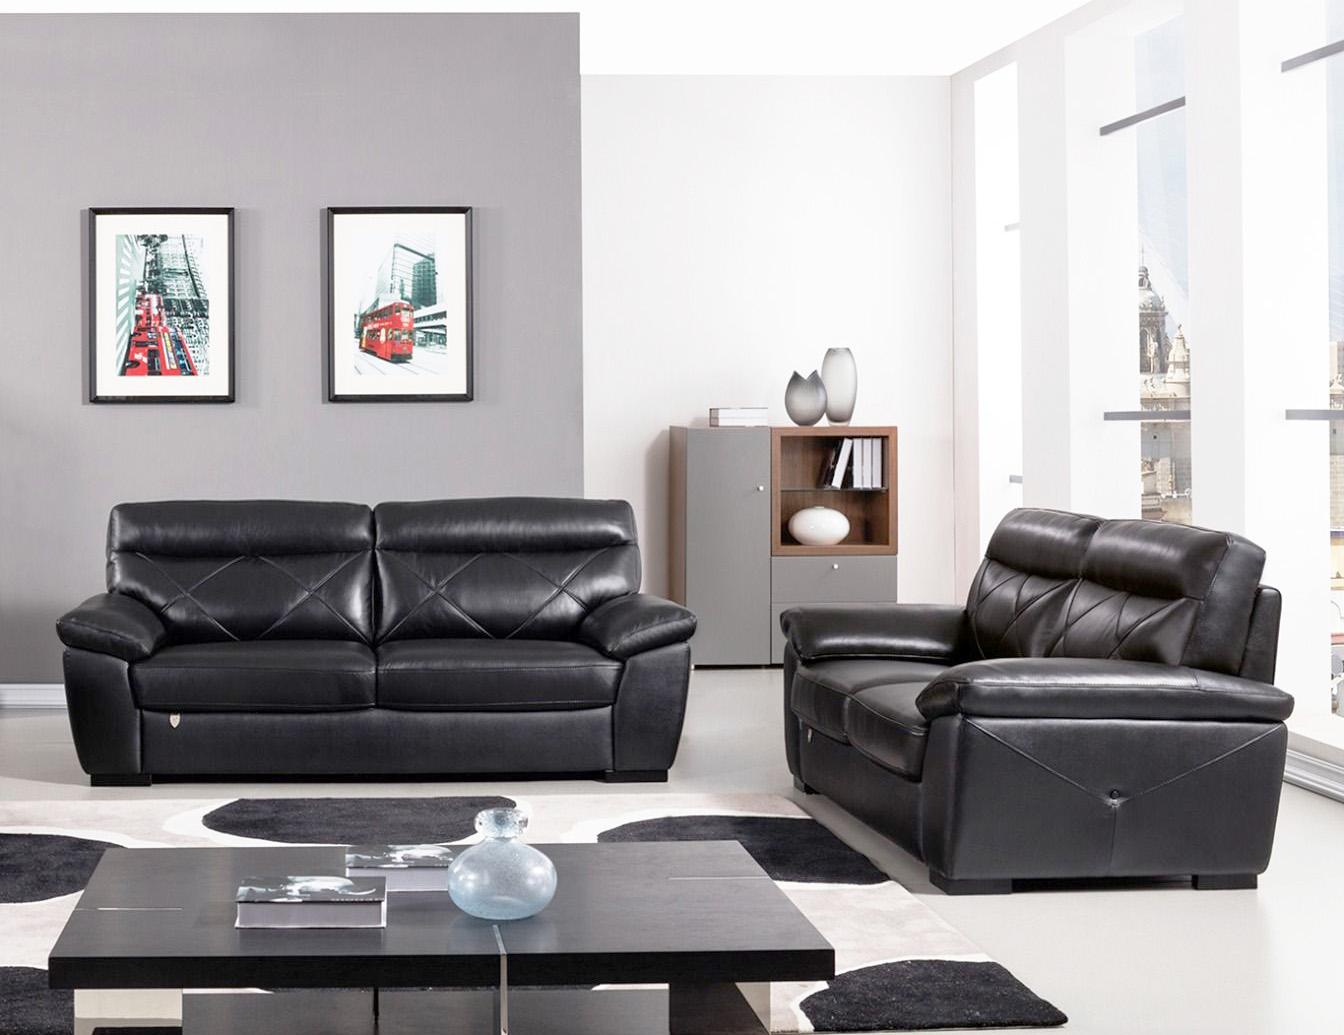 Contemporary, Modern Sofa Set EK081-BK EK081-BK-Set-2 in Black Italian Leather